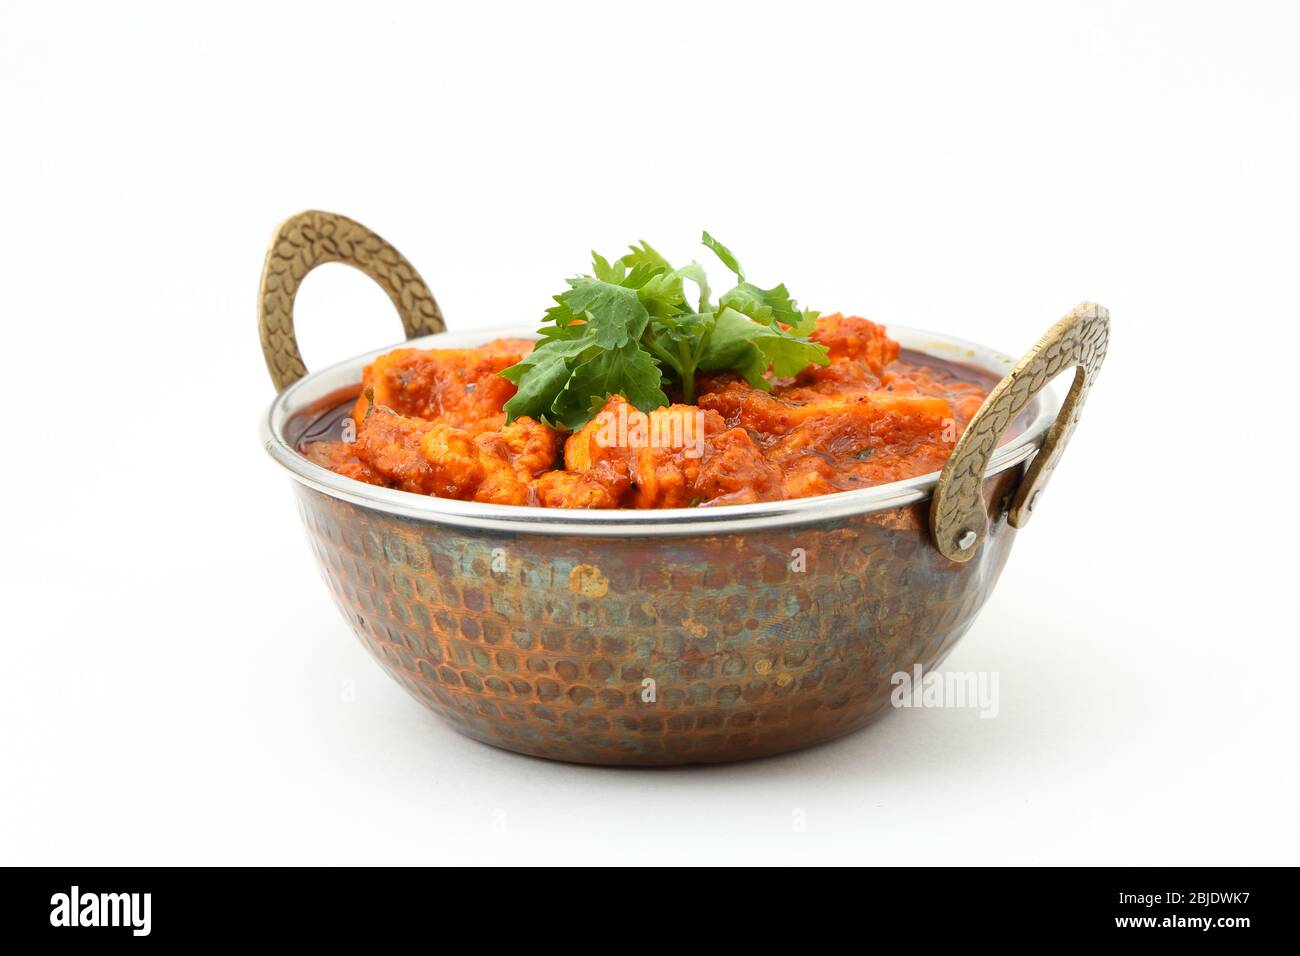 HÜTTENKÄSE IM INDISCHEN STIL VEGETARISCHES CURRY GERICHT. Kadai Paneer: Traditionelle indische Küche Stockfoto